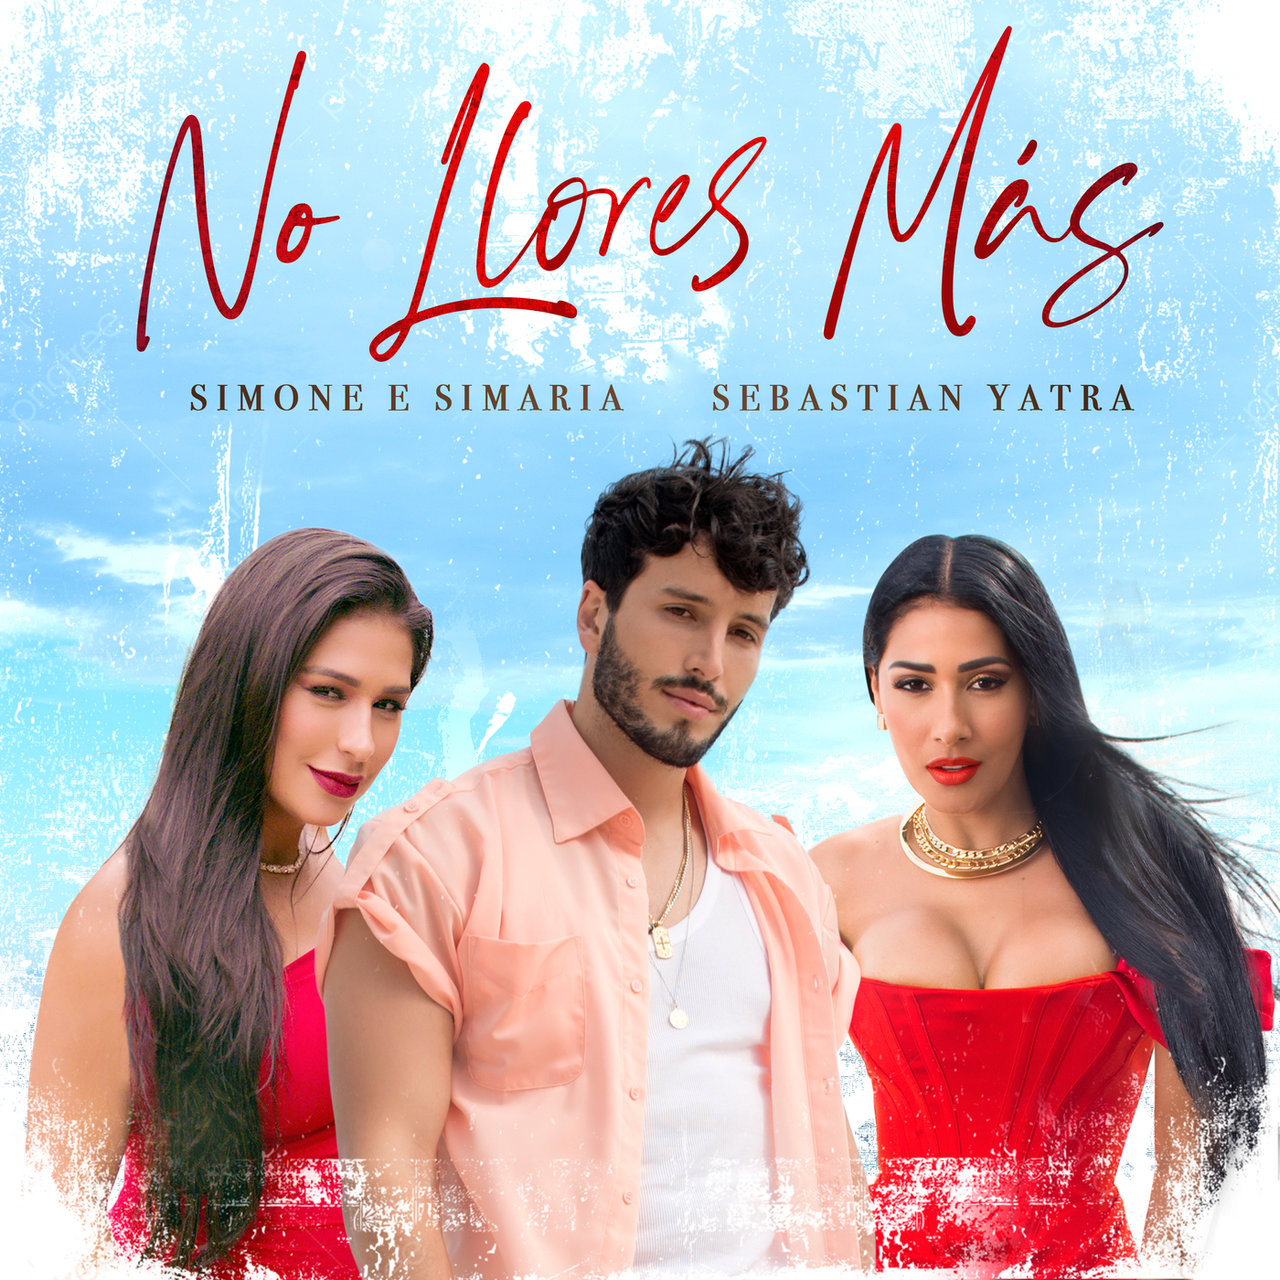 Simone e Simaria - No Llores Más (ft. Sebastián Yatra) (Cover)